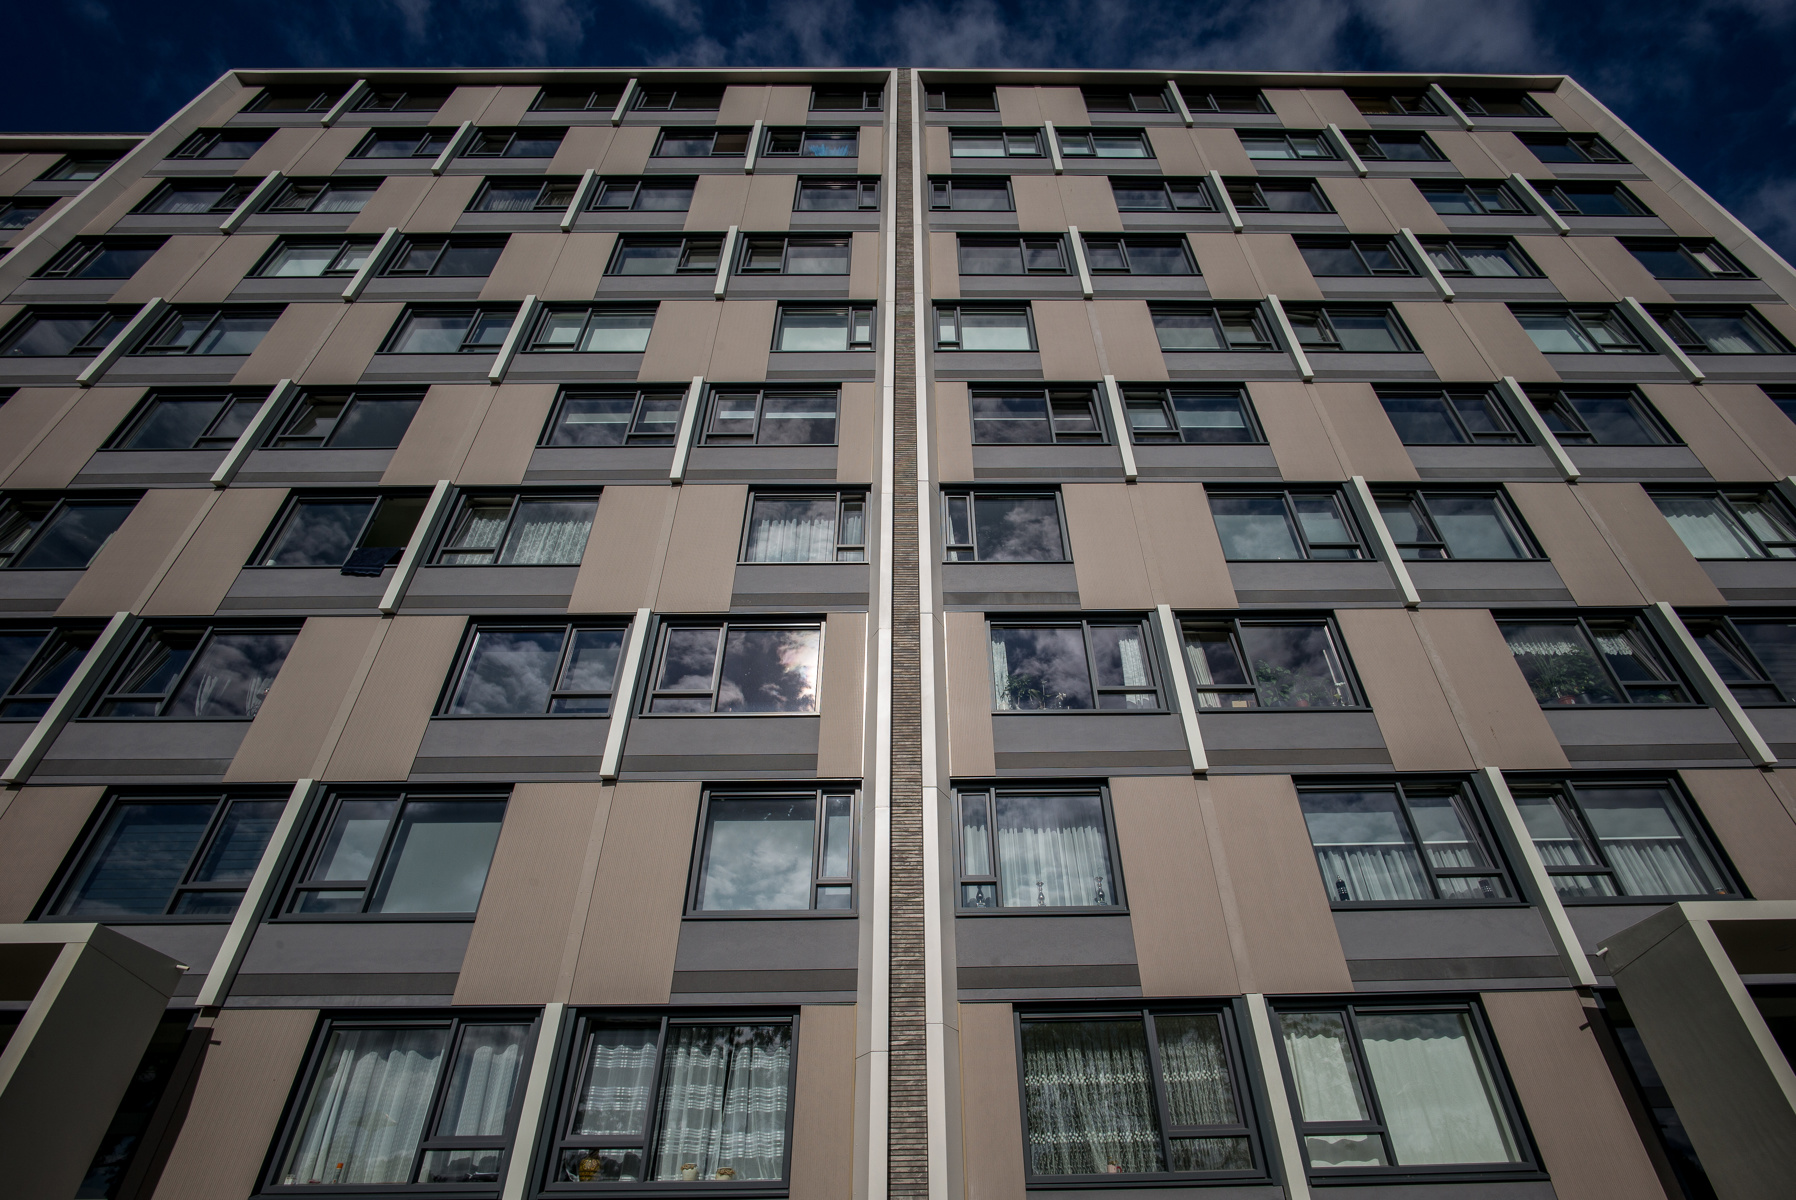 Restaurierung statt Neubau: ACA Wohngebäude in Utrecht-Overvecht